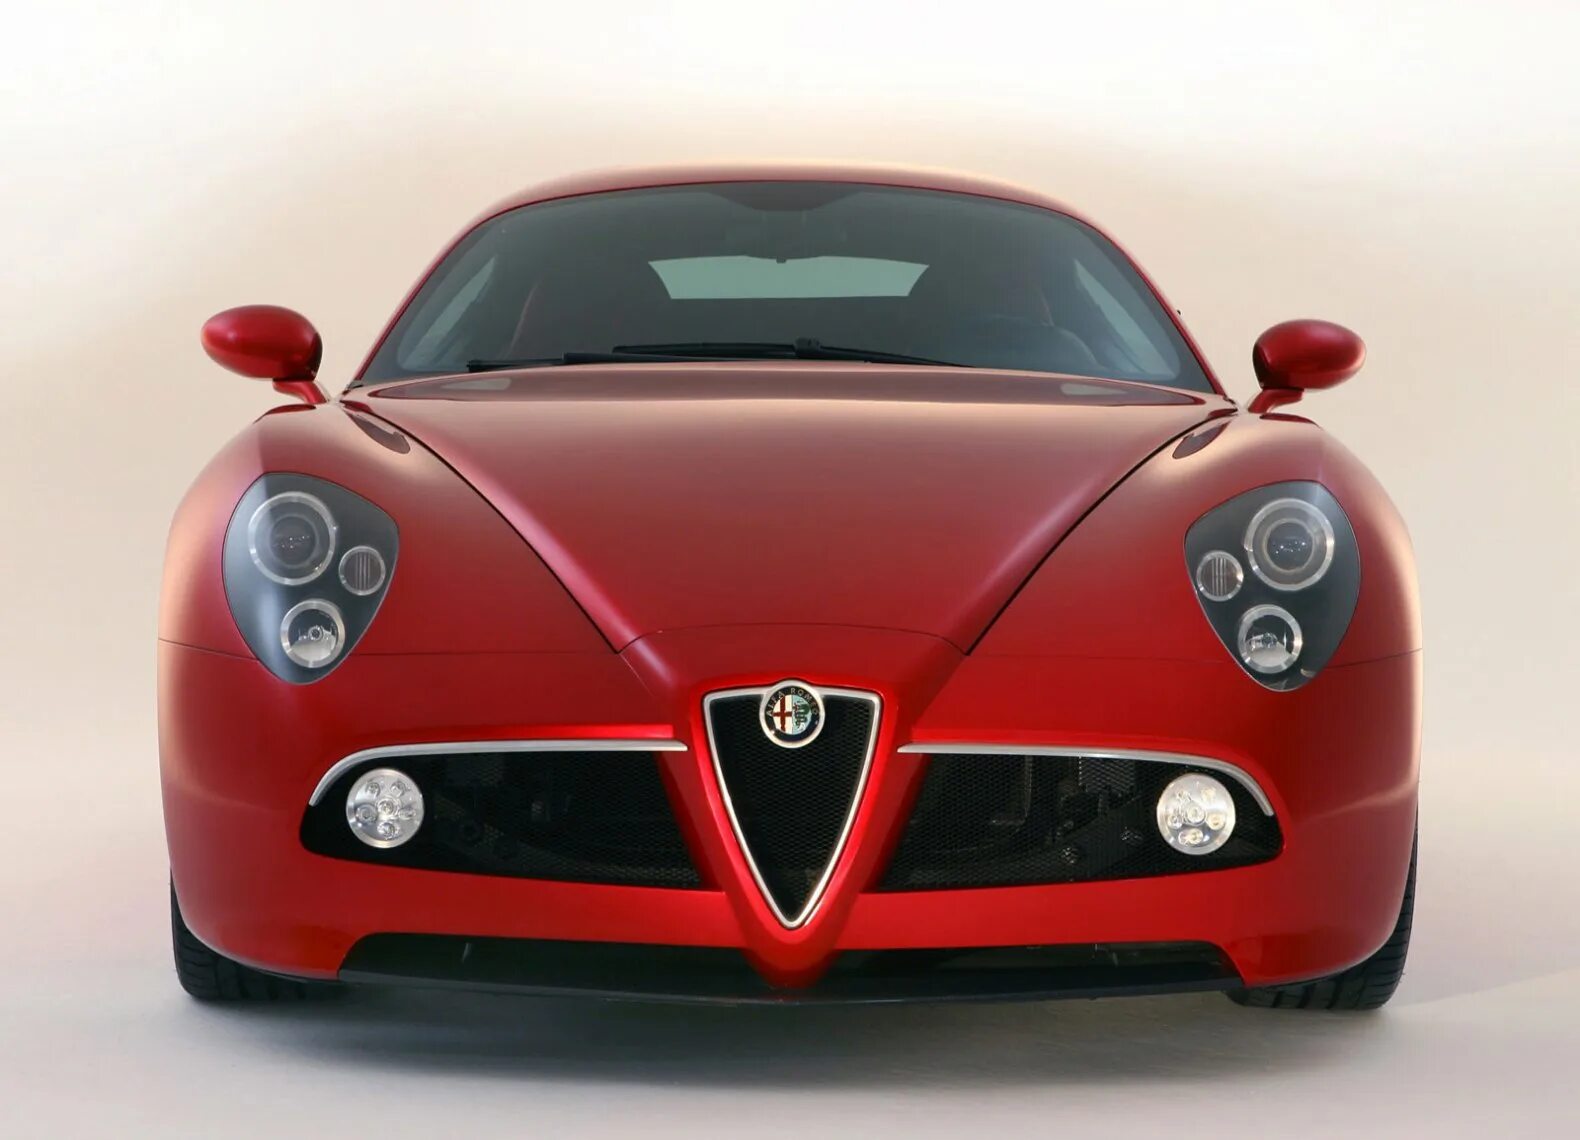 C 8 01. Машина Alfa Romeo 8c Competizione. 2013 Alfa Romeo 8c. Alfa Romeo 8c Coupe. Альфа Ромео 8c Competizione.